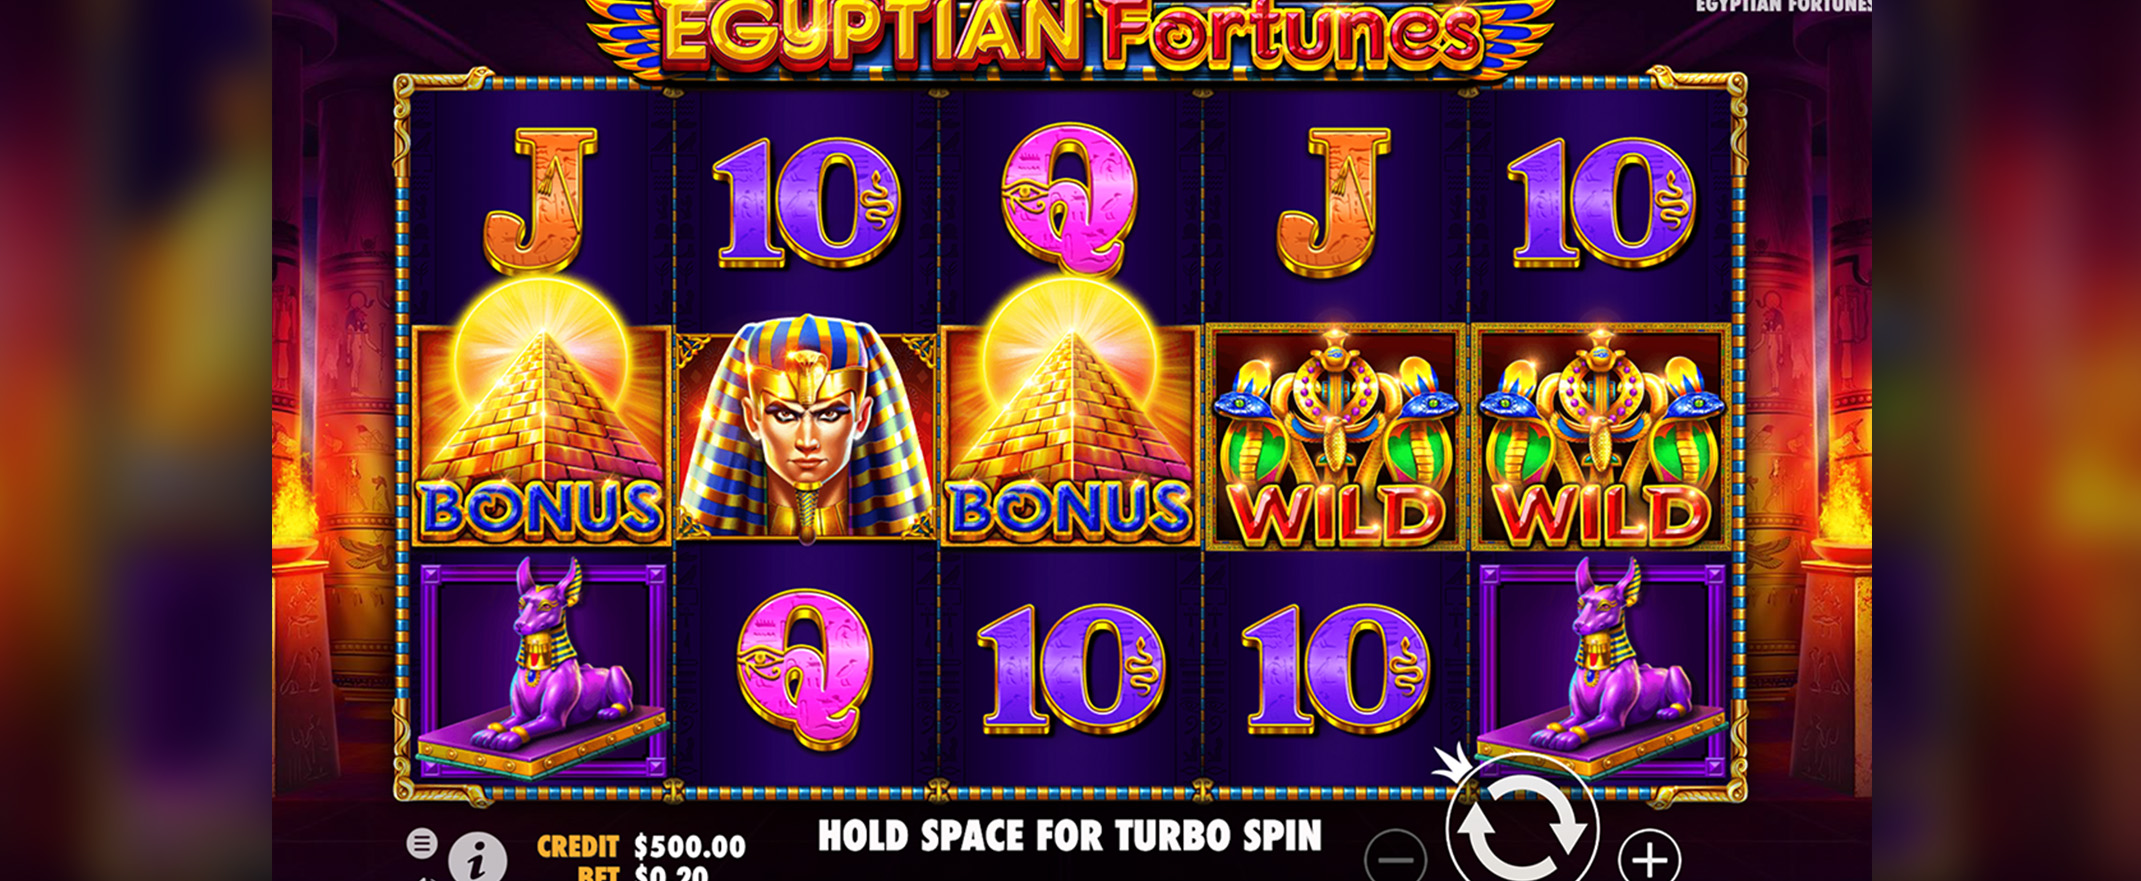 Egyptian Fortunes, ein neues Spielautomat von Pragmatic Play